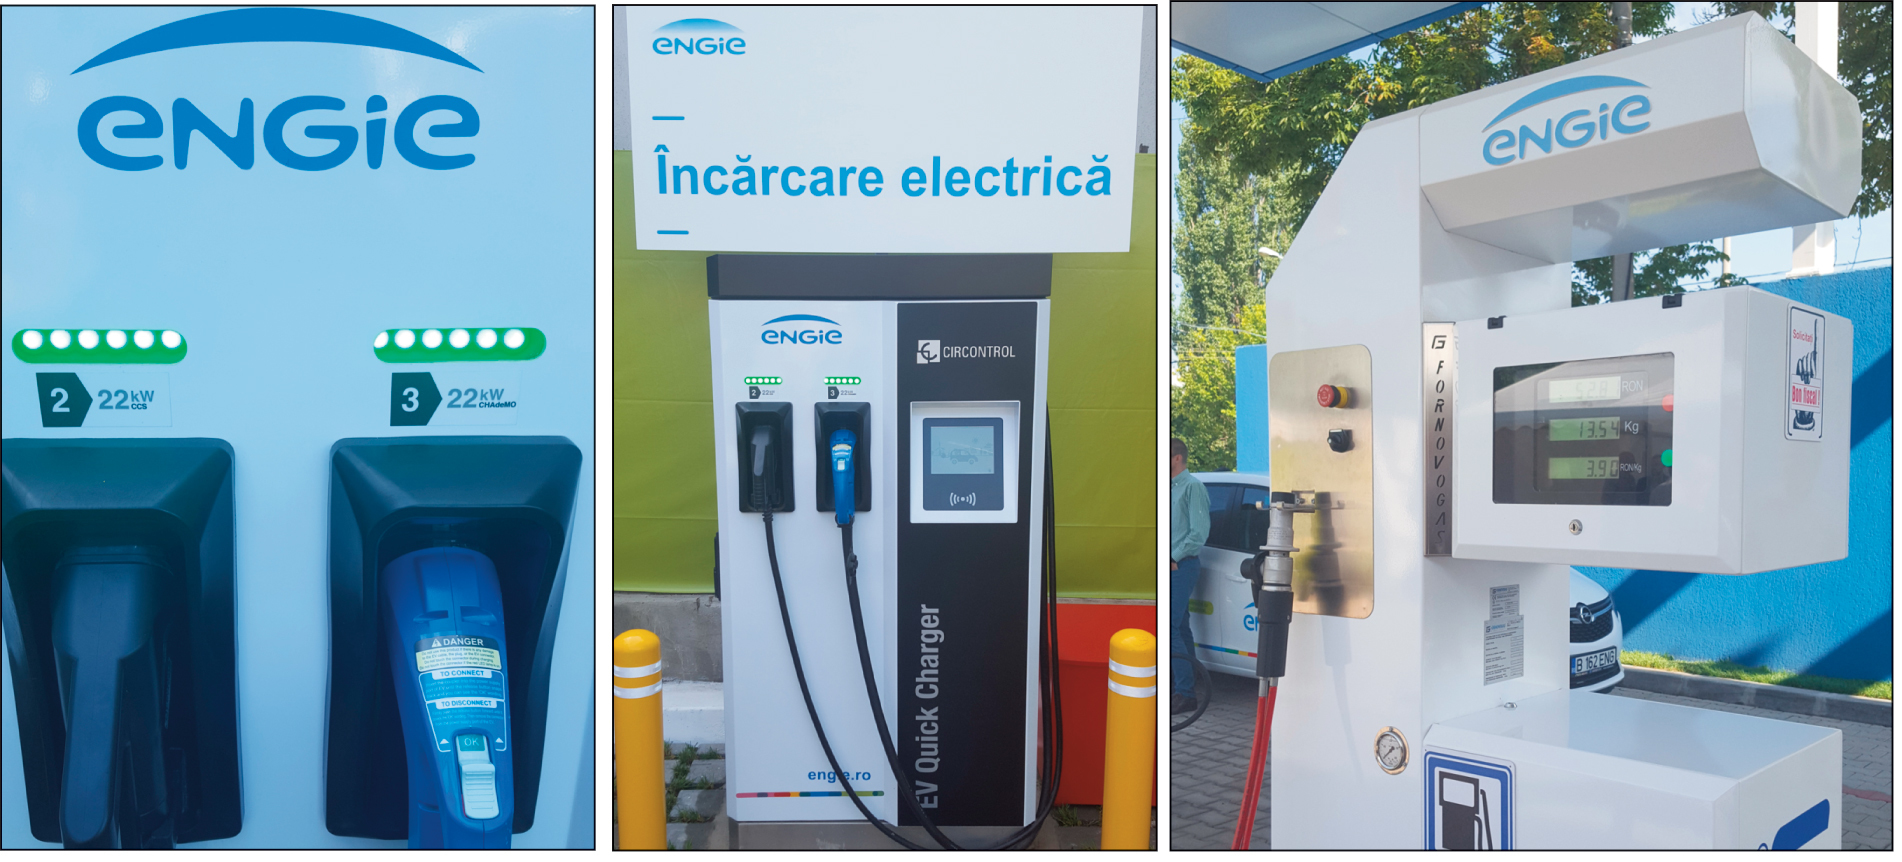 Francezii de la Engie vor să ajungă la 15 staţii cu gaz comprimat pe termen mediu şi se extind pe partea de mobilitate electrică